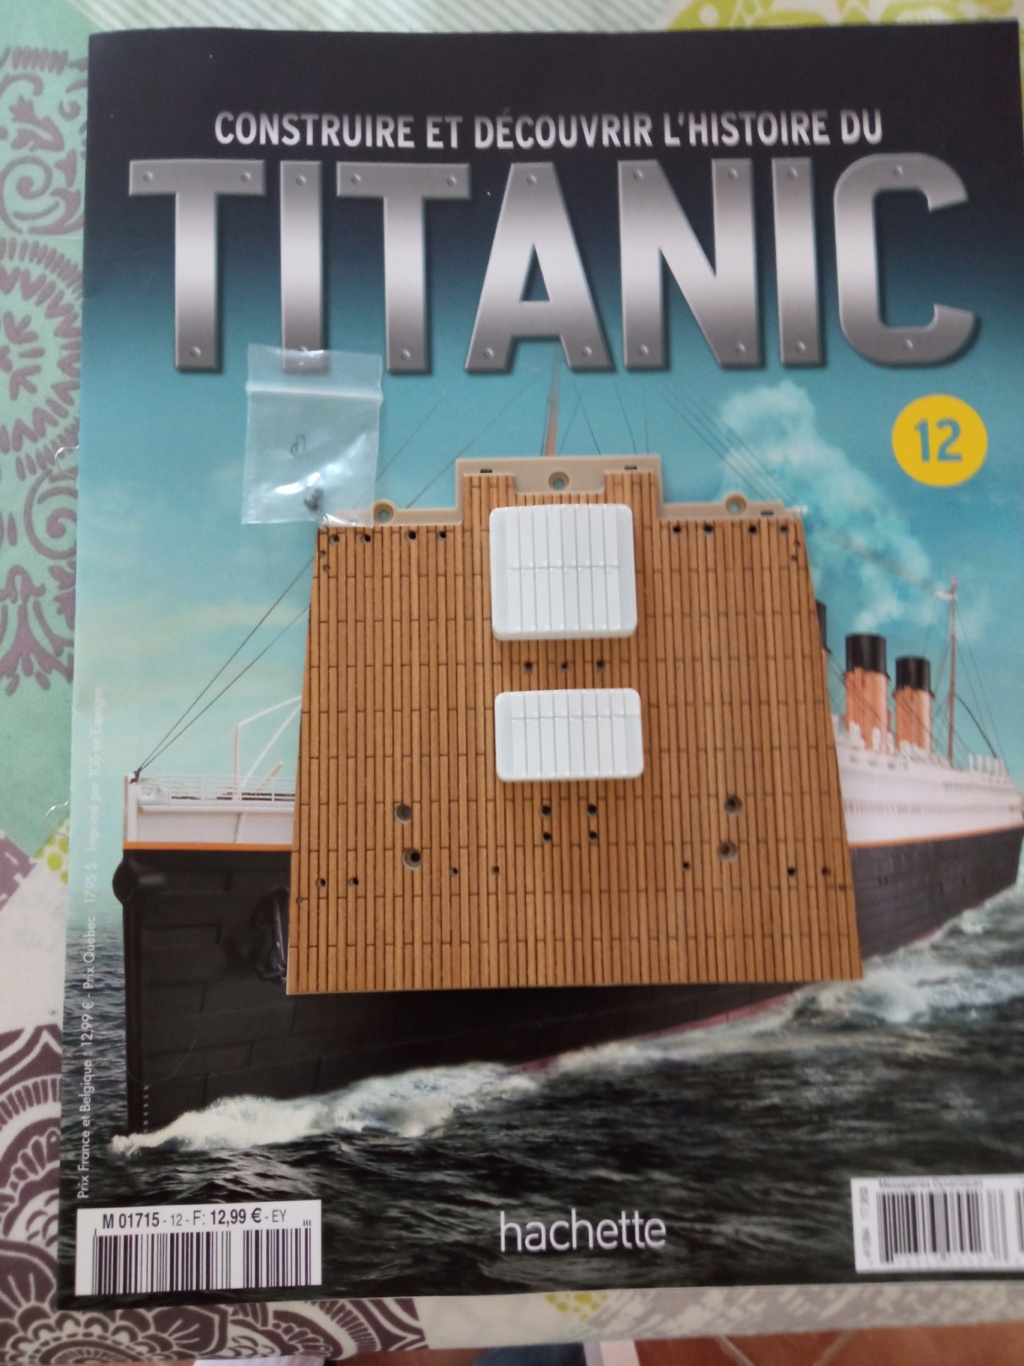 RMS Titanic [Hachette 1/200°] de clg78 - Page 5 12_110